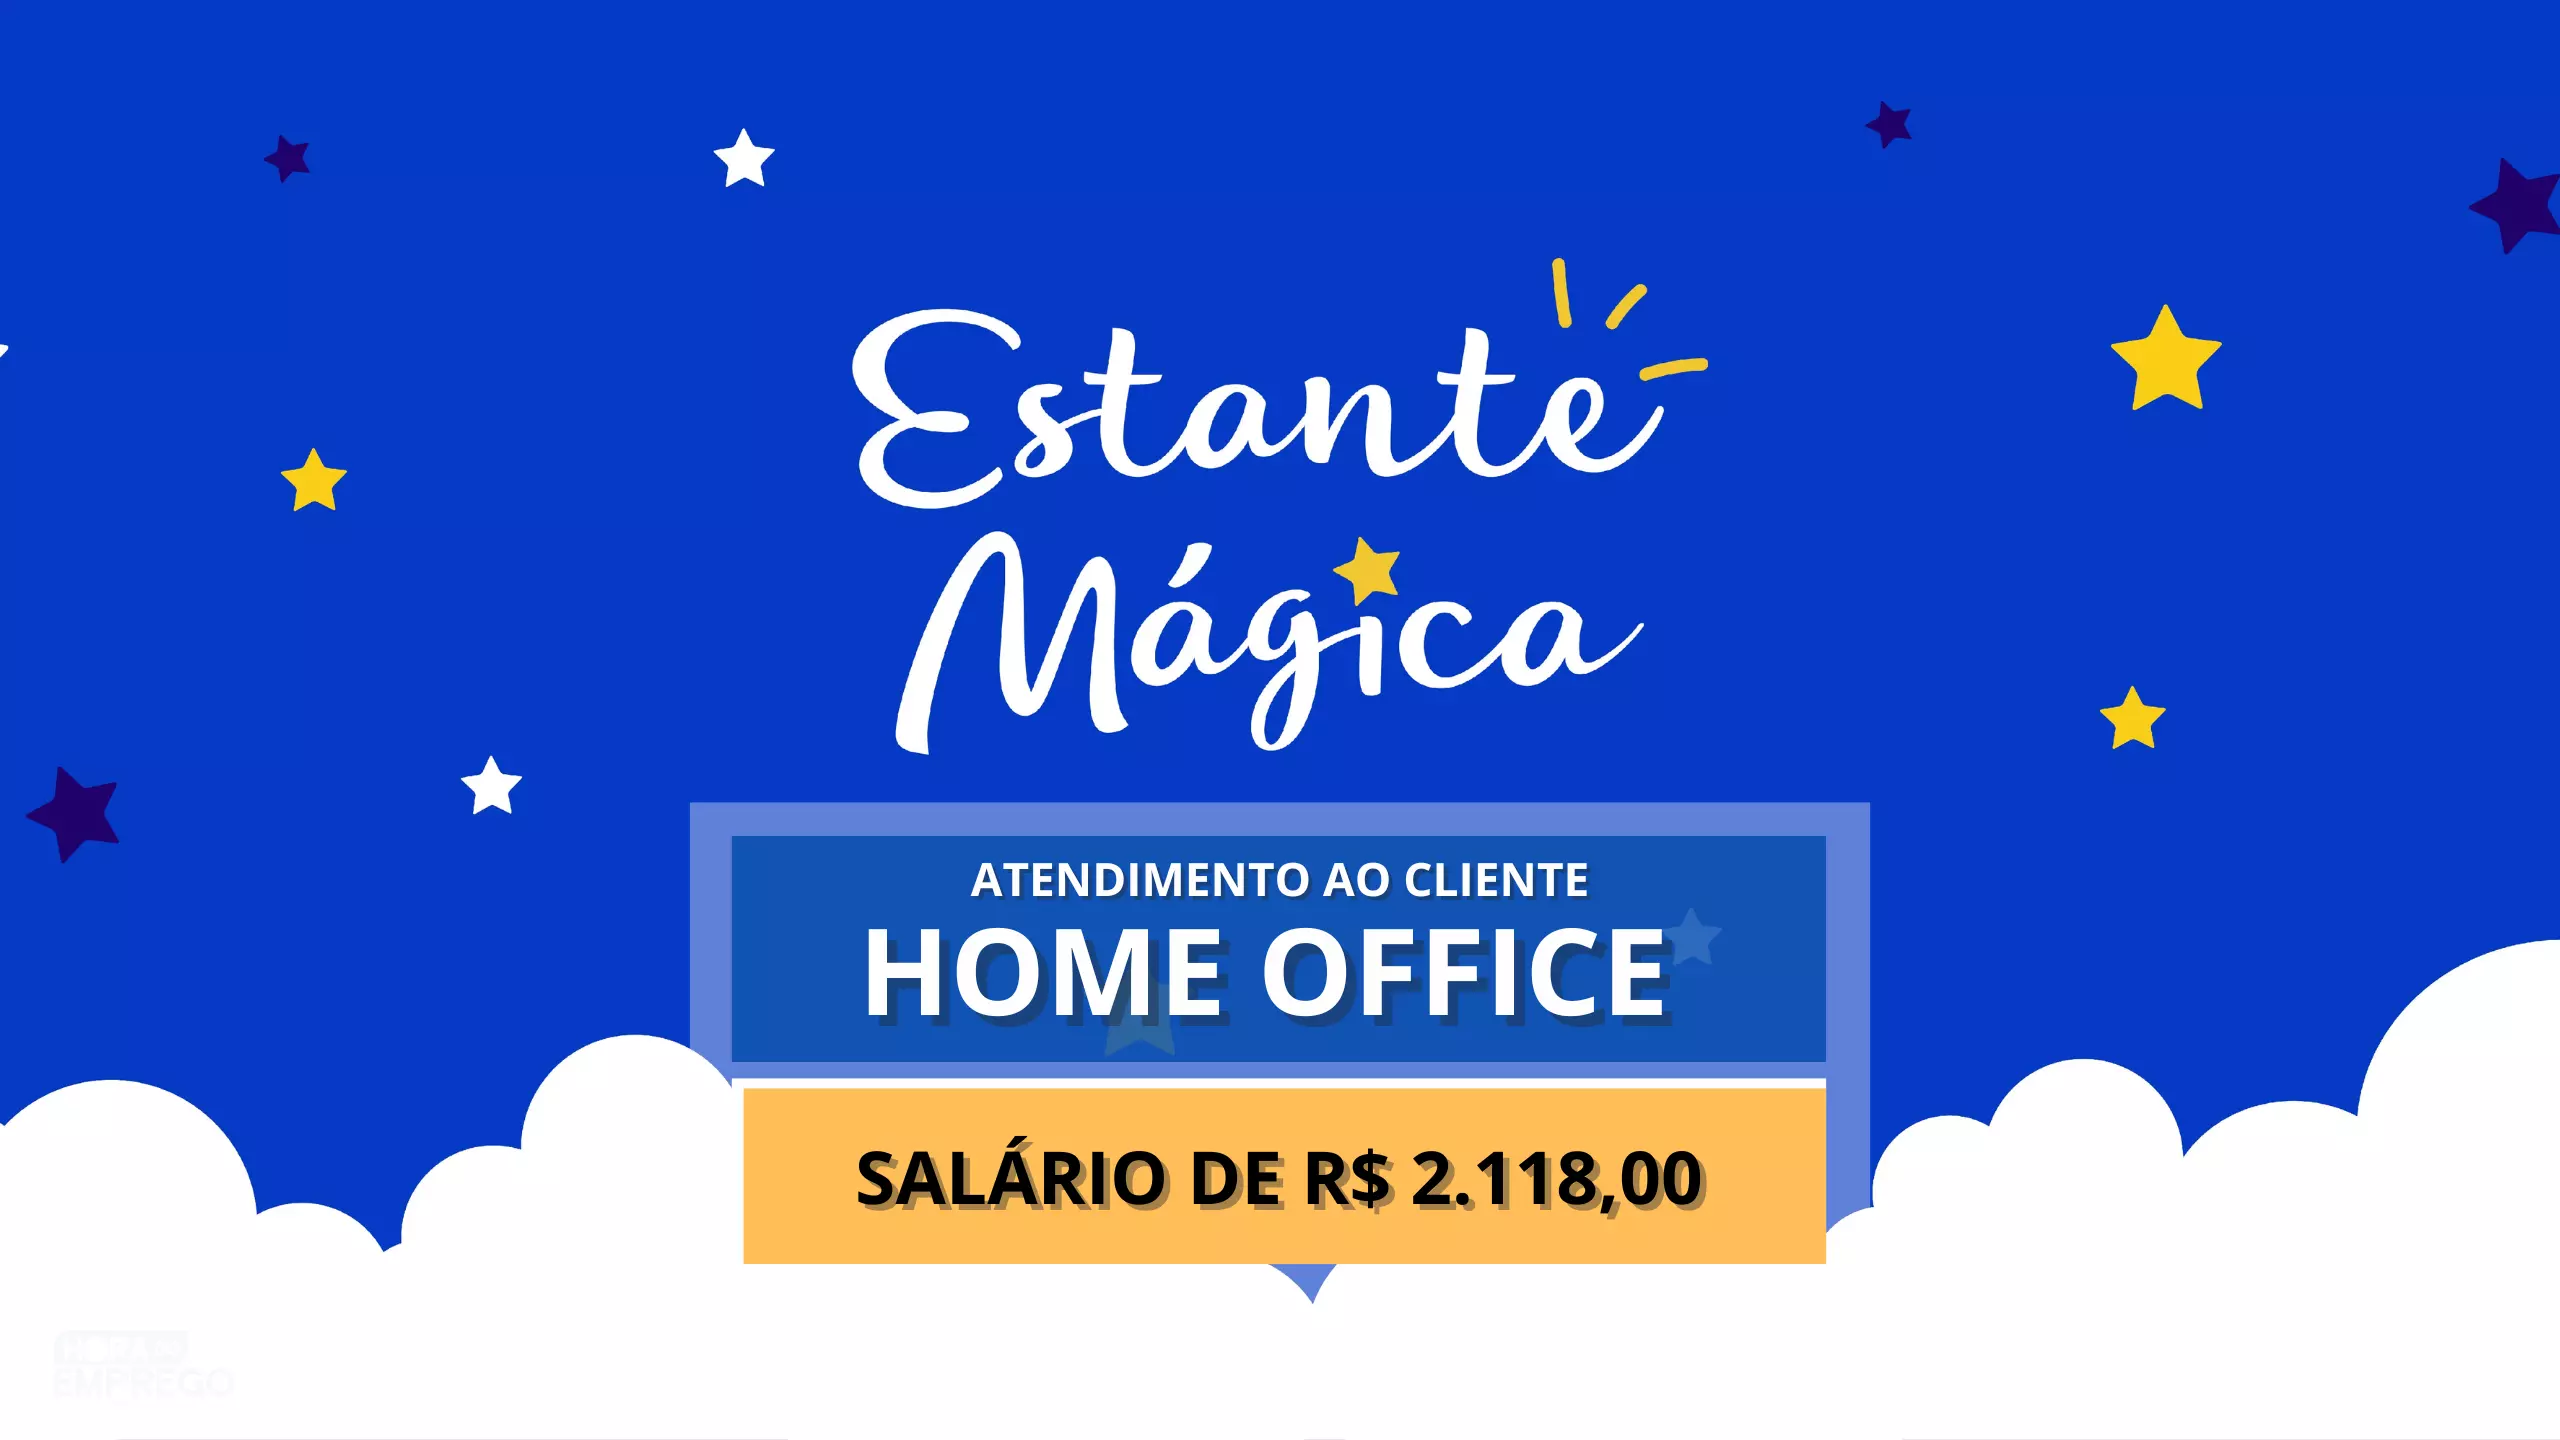 Estante Mágica abre vagas 100% HOME OFFICE para Atendimento ao Cliente com salário de R$ 2.118,00